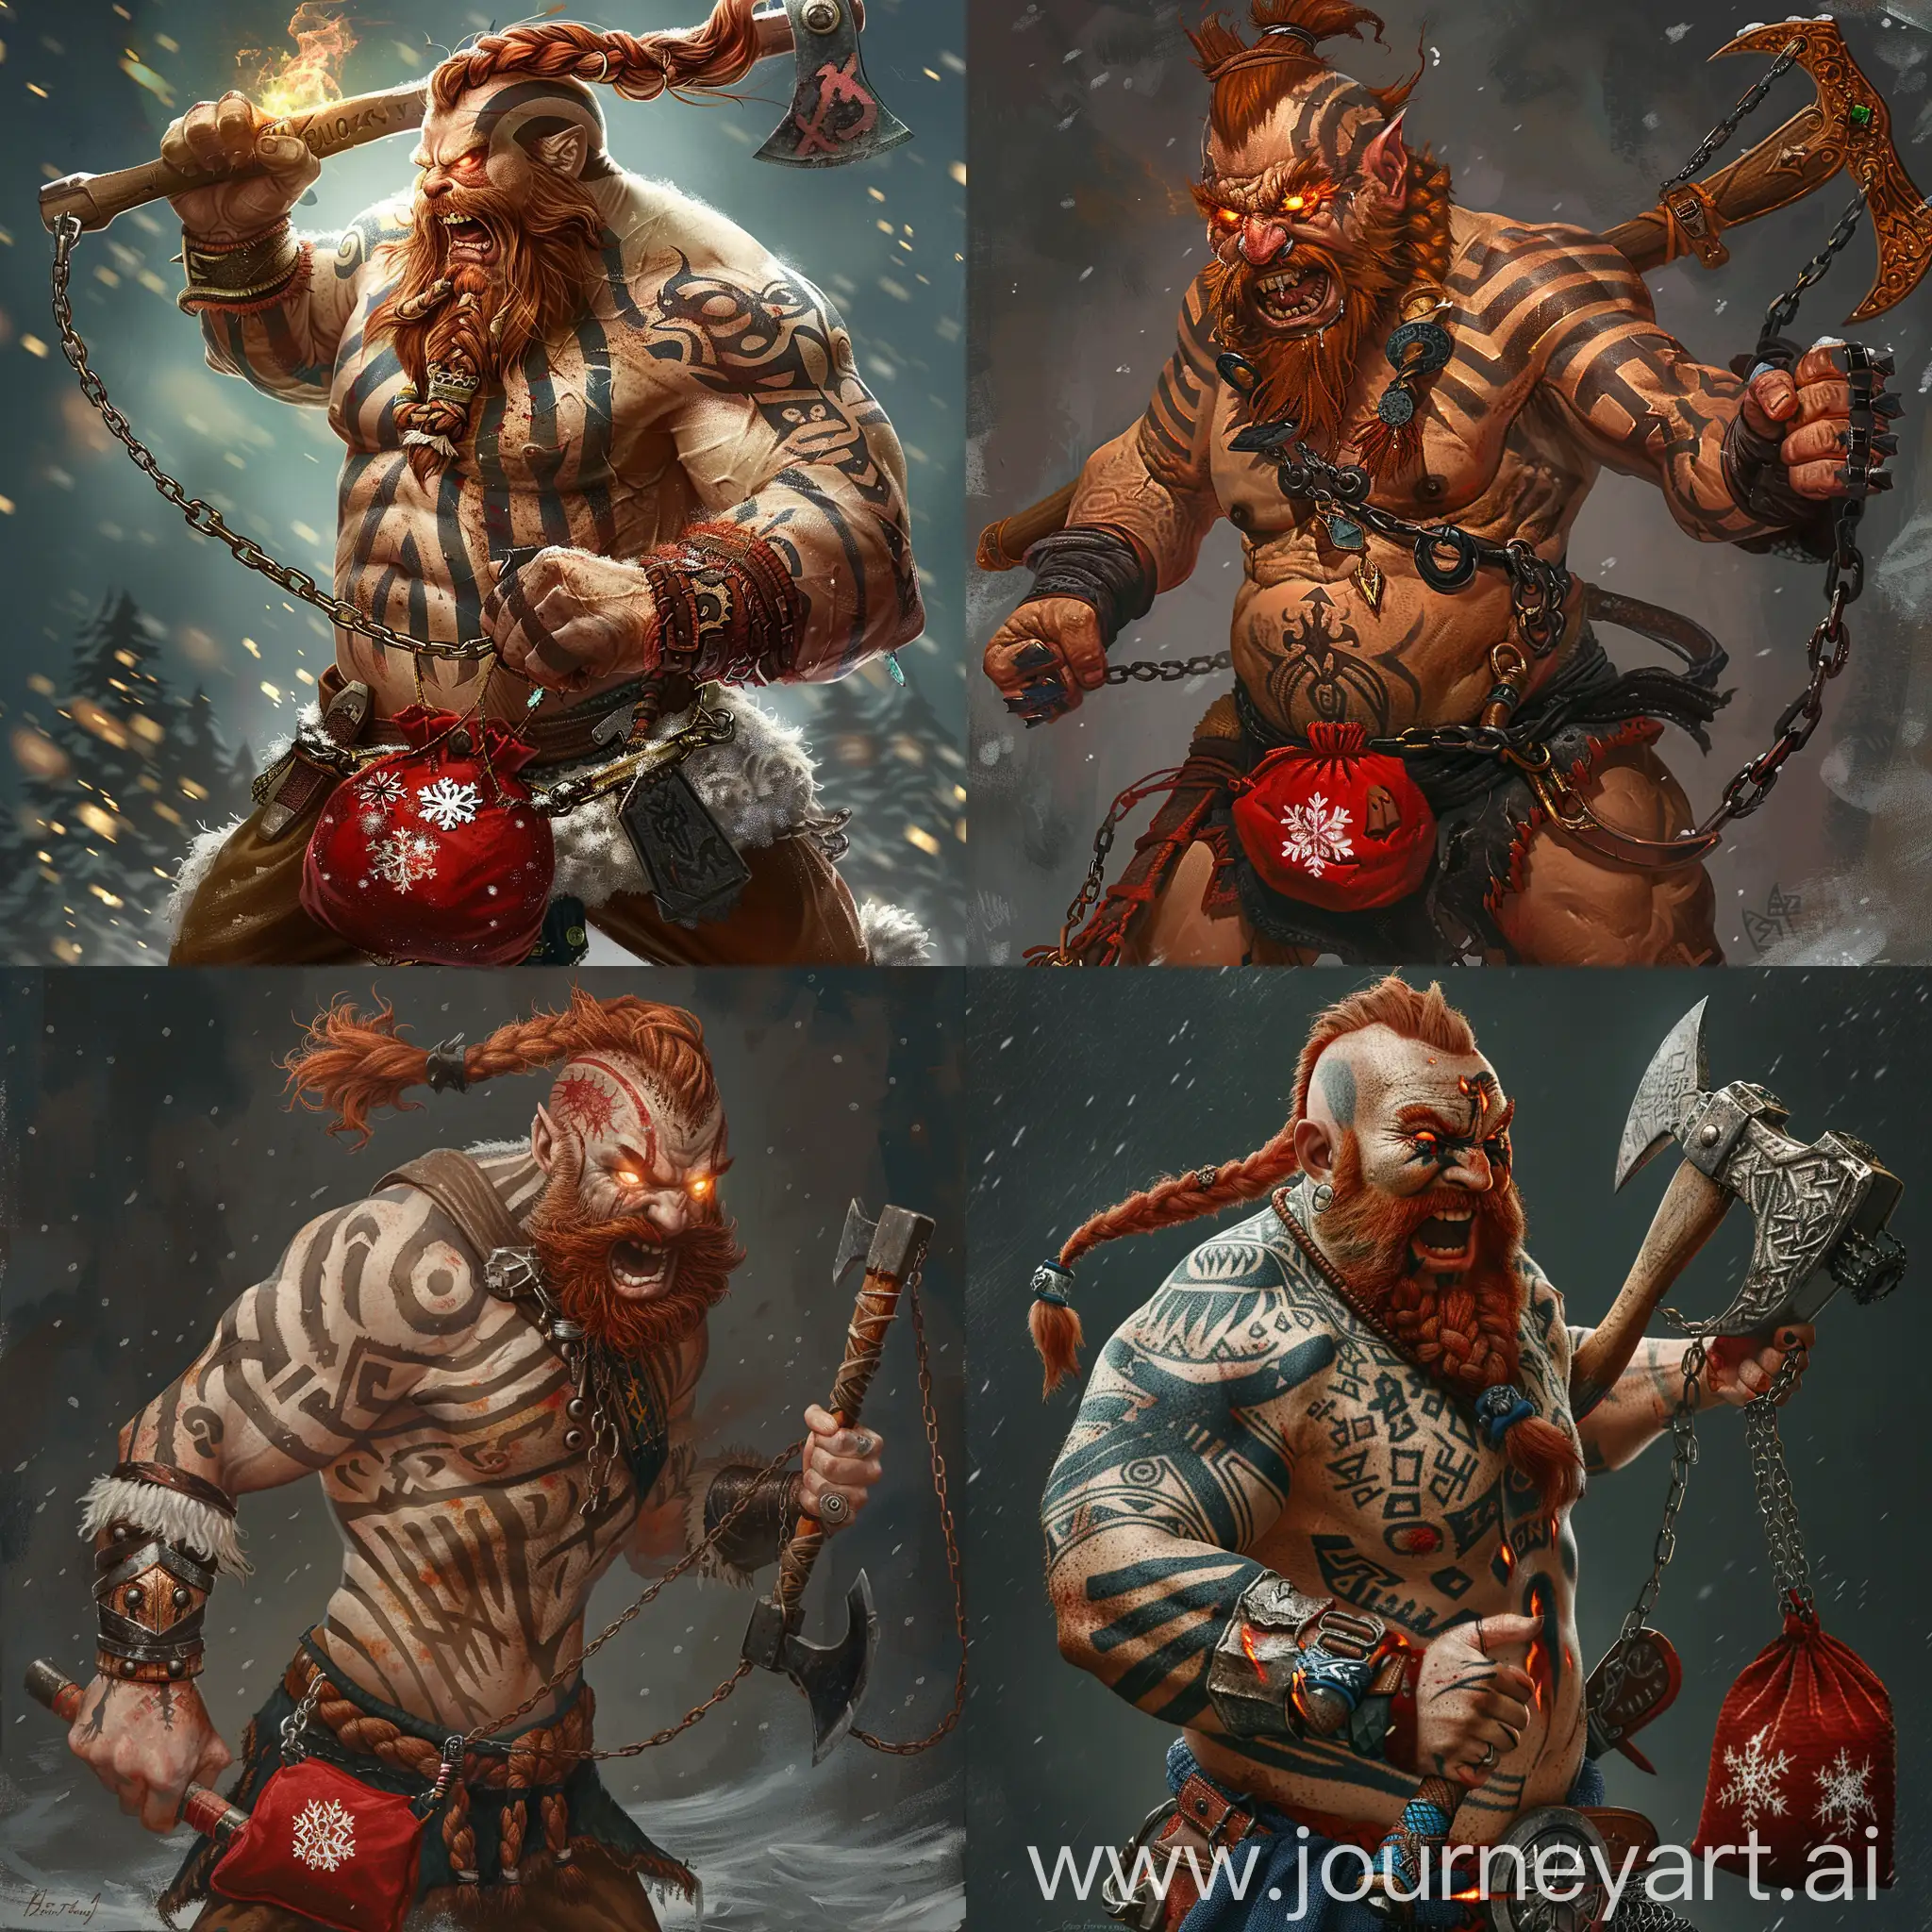 Ferocious-Dwarf-Barbarian-Bulgar-the-Red-in-Fiery-Battle